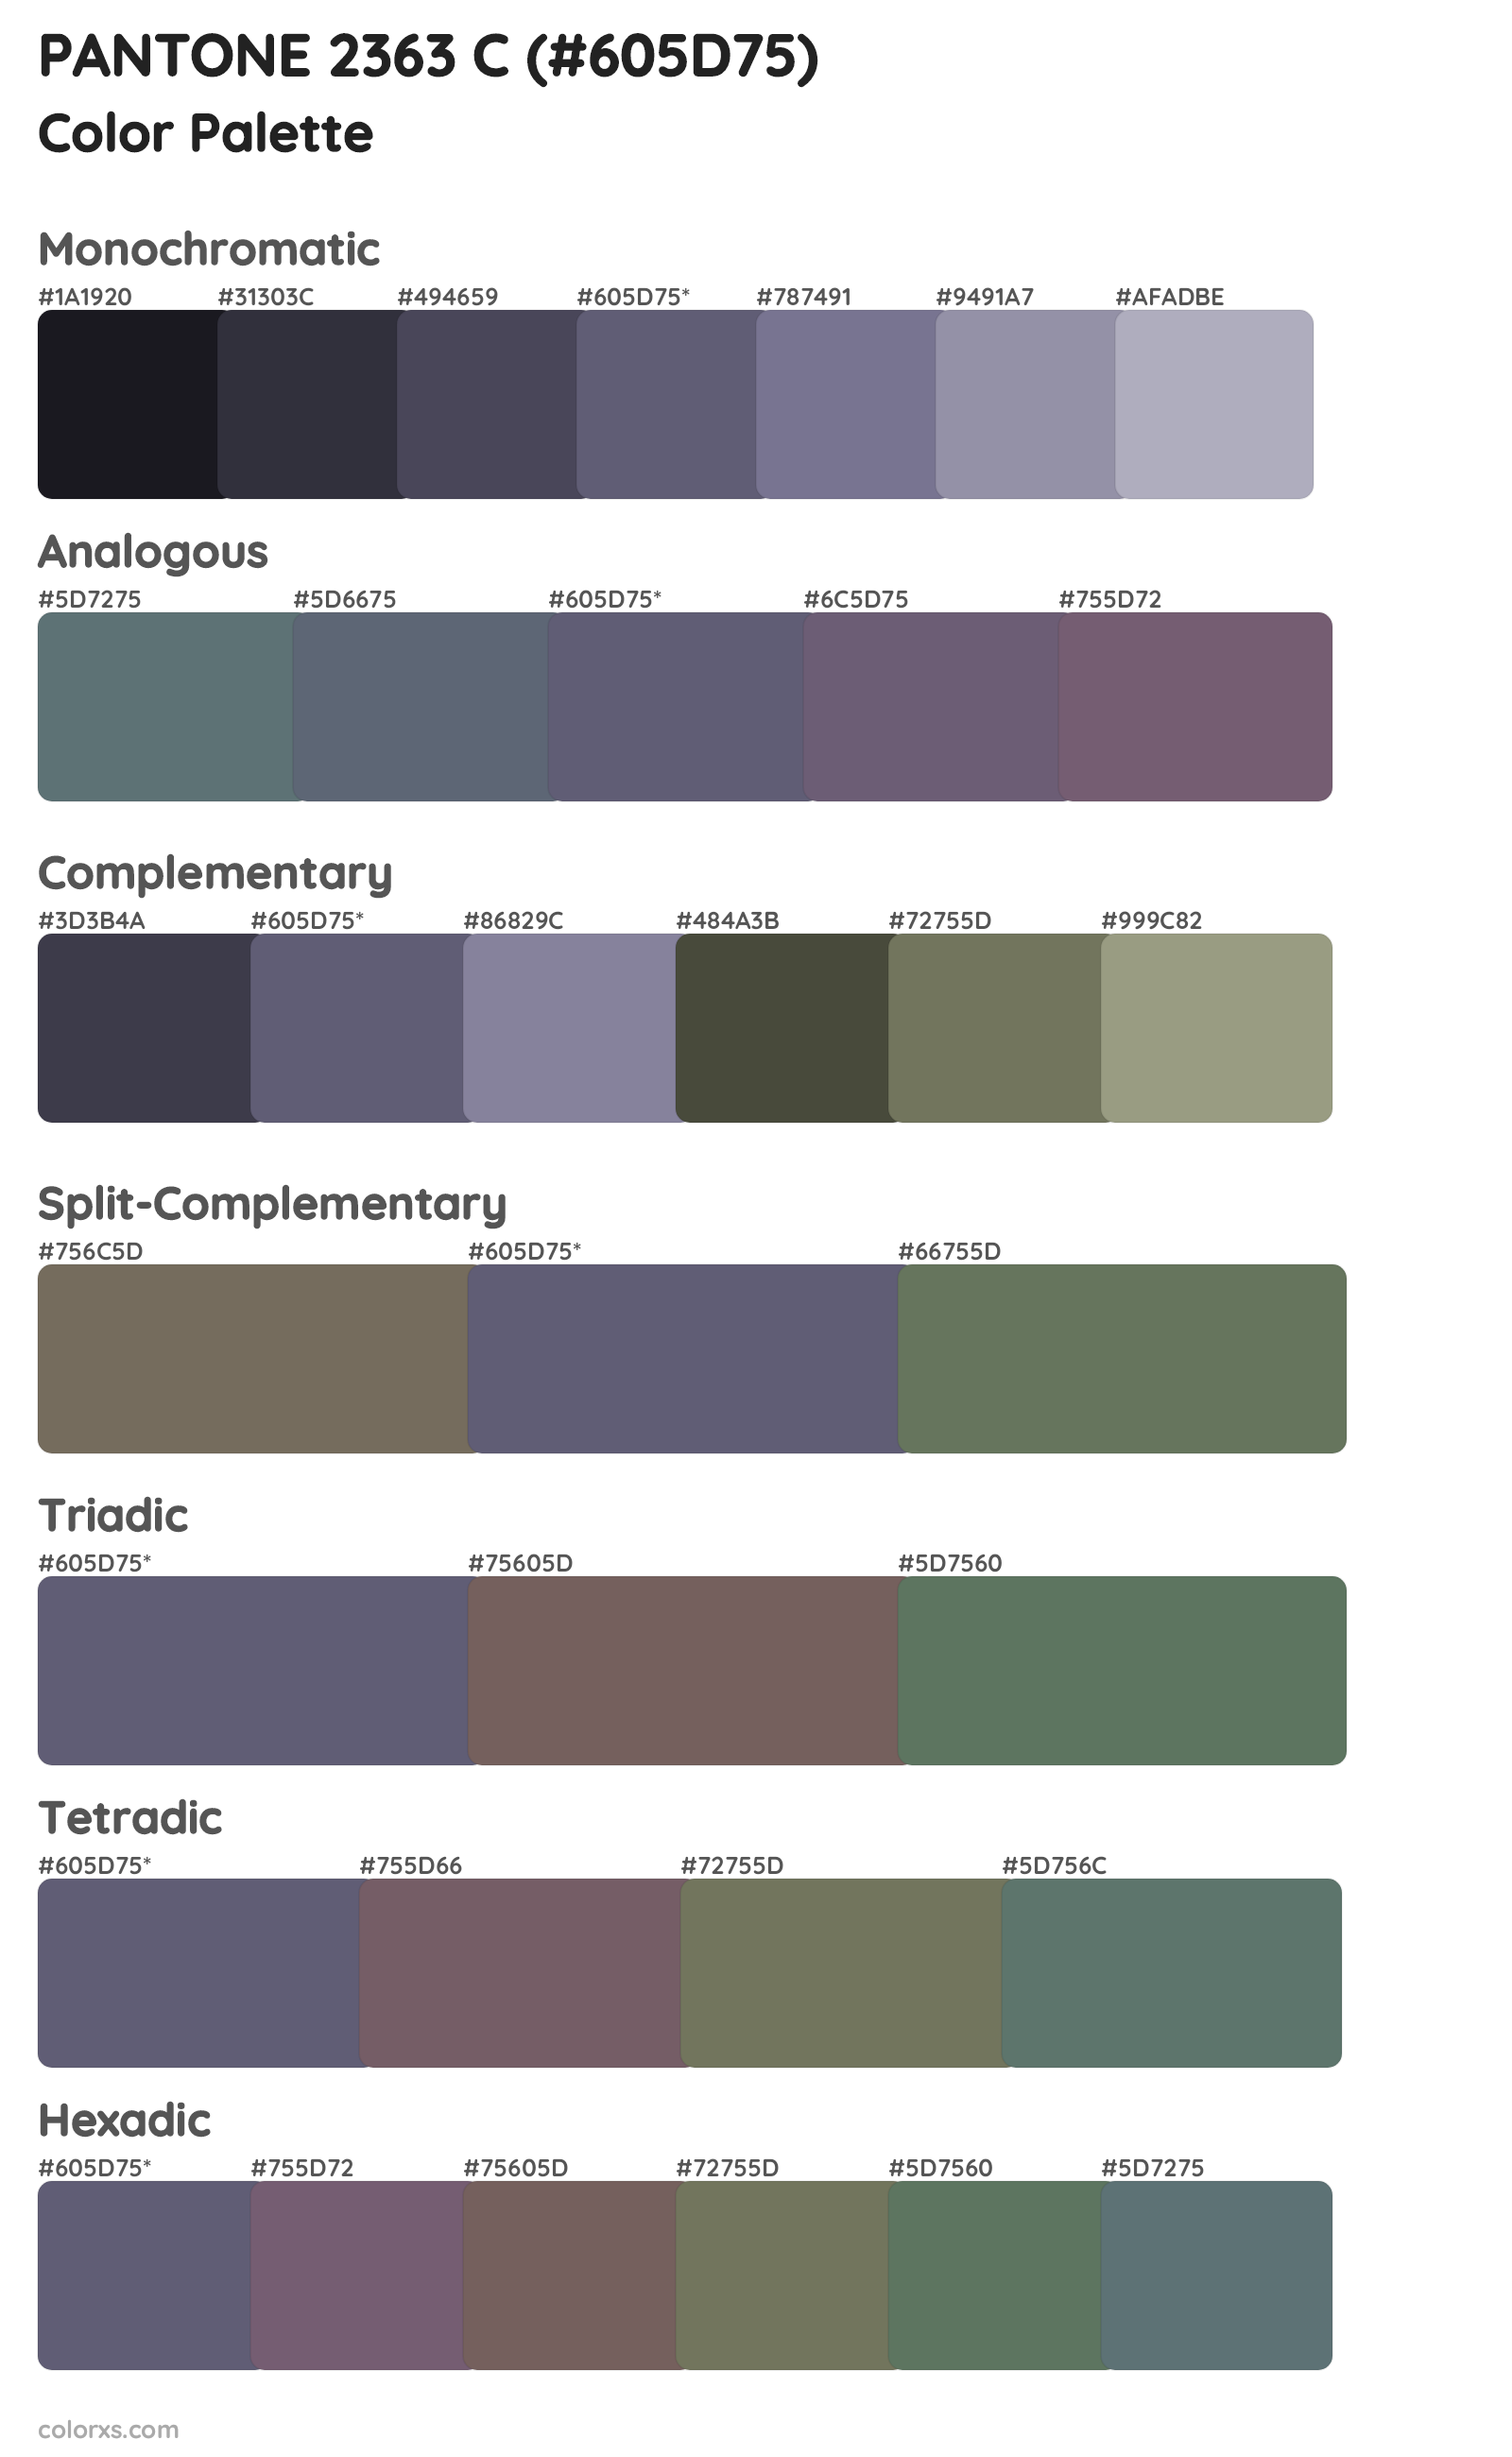 PANTONE 2363 C Color Scheme Palettes